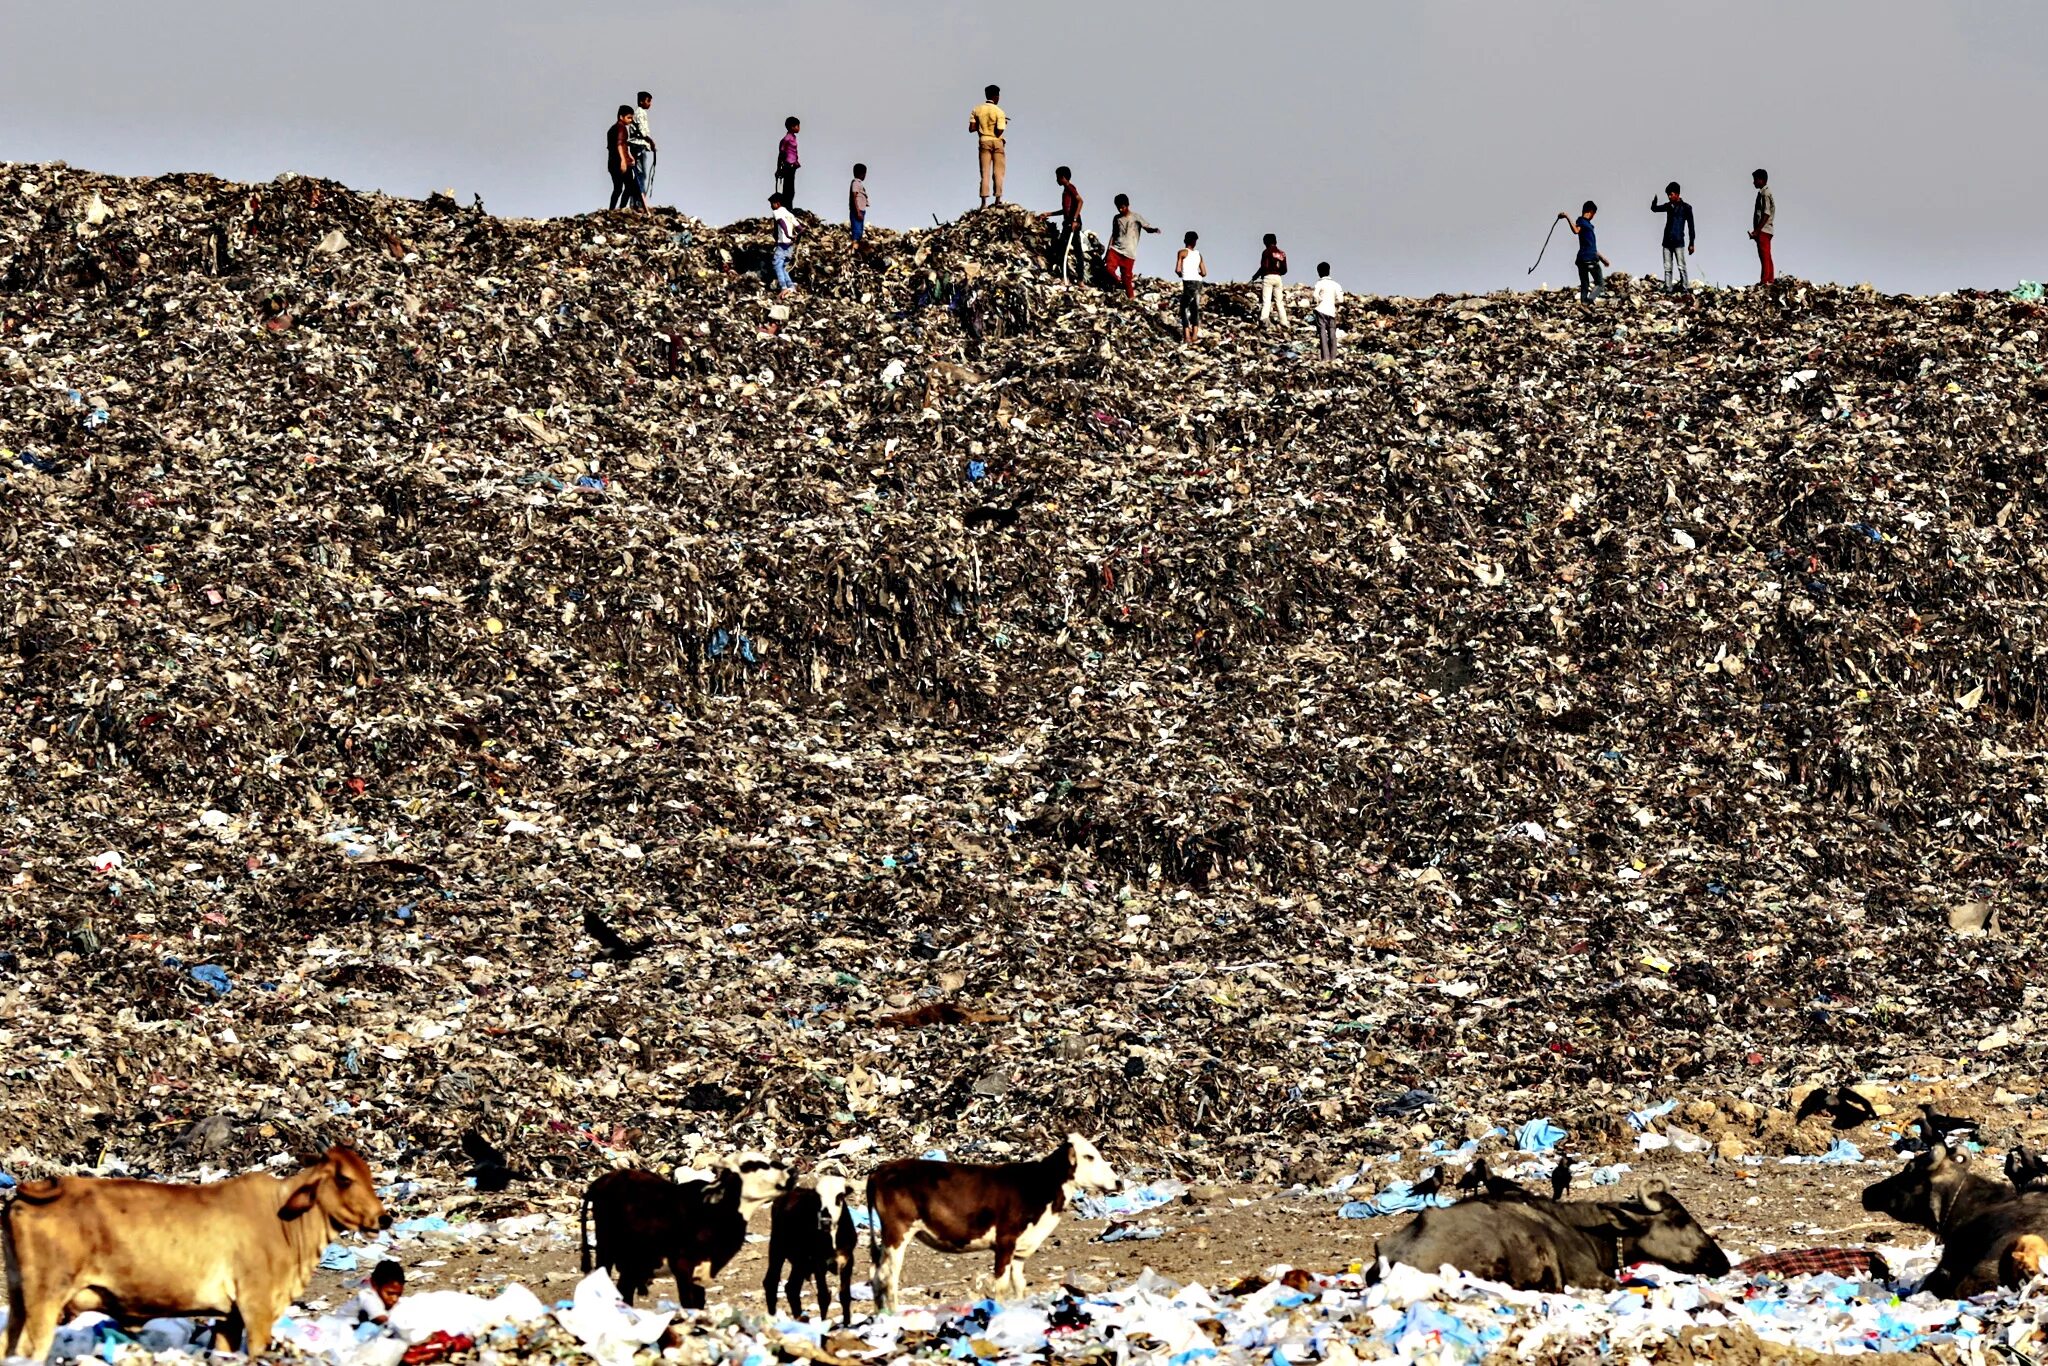 Свалка Deonar, Мумбаи, Индия. Самый большой мусорный полигон в мире. Свалка Deonar, Мумбаи, Индия (132 гектара).